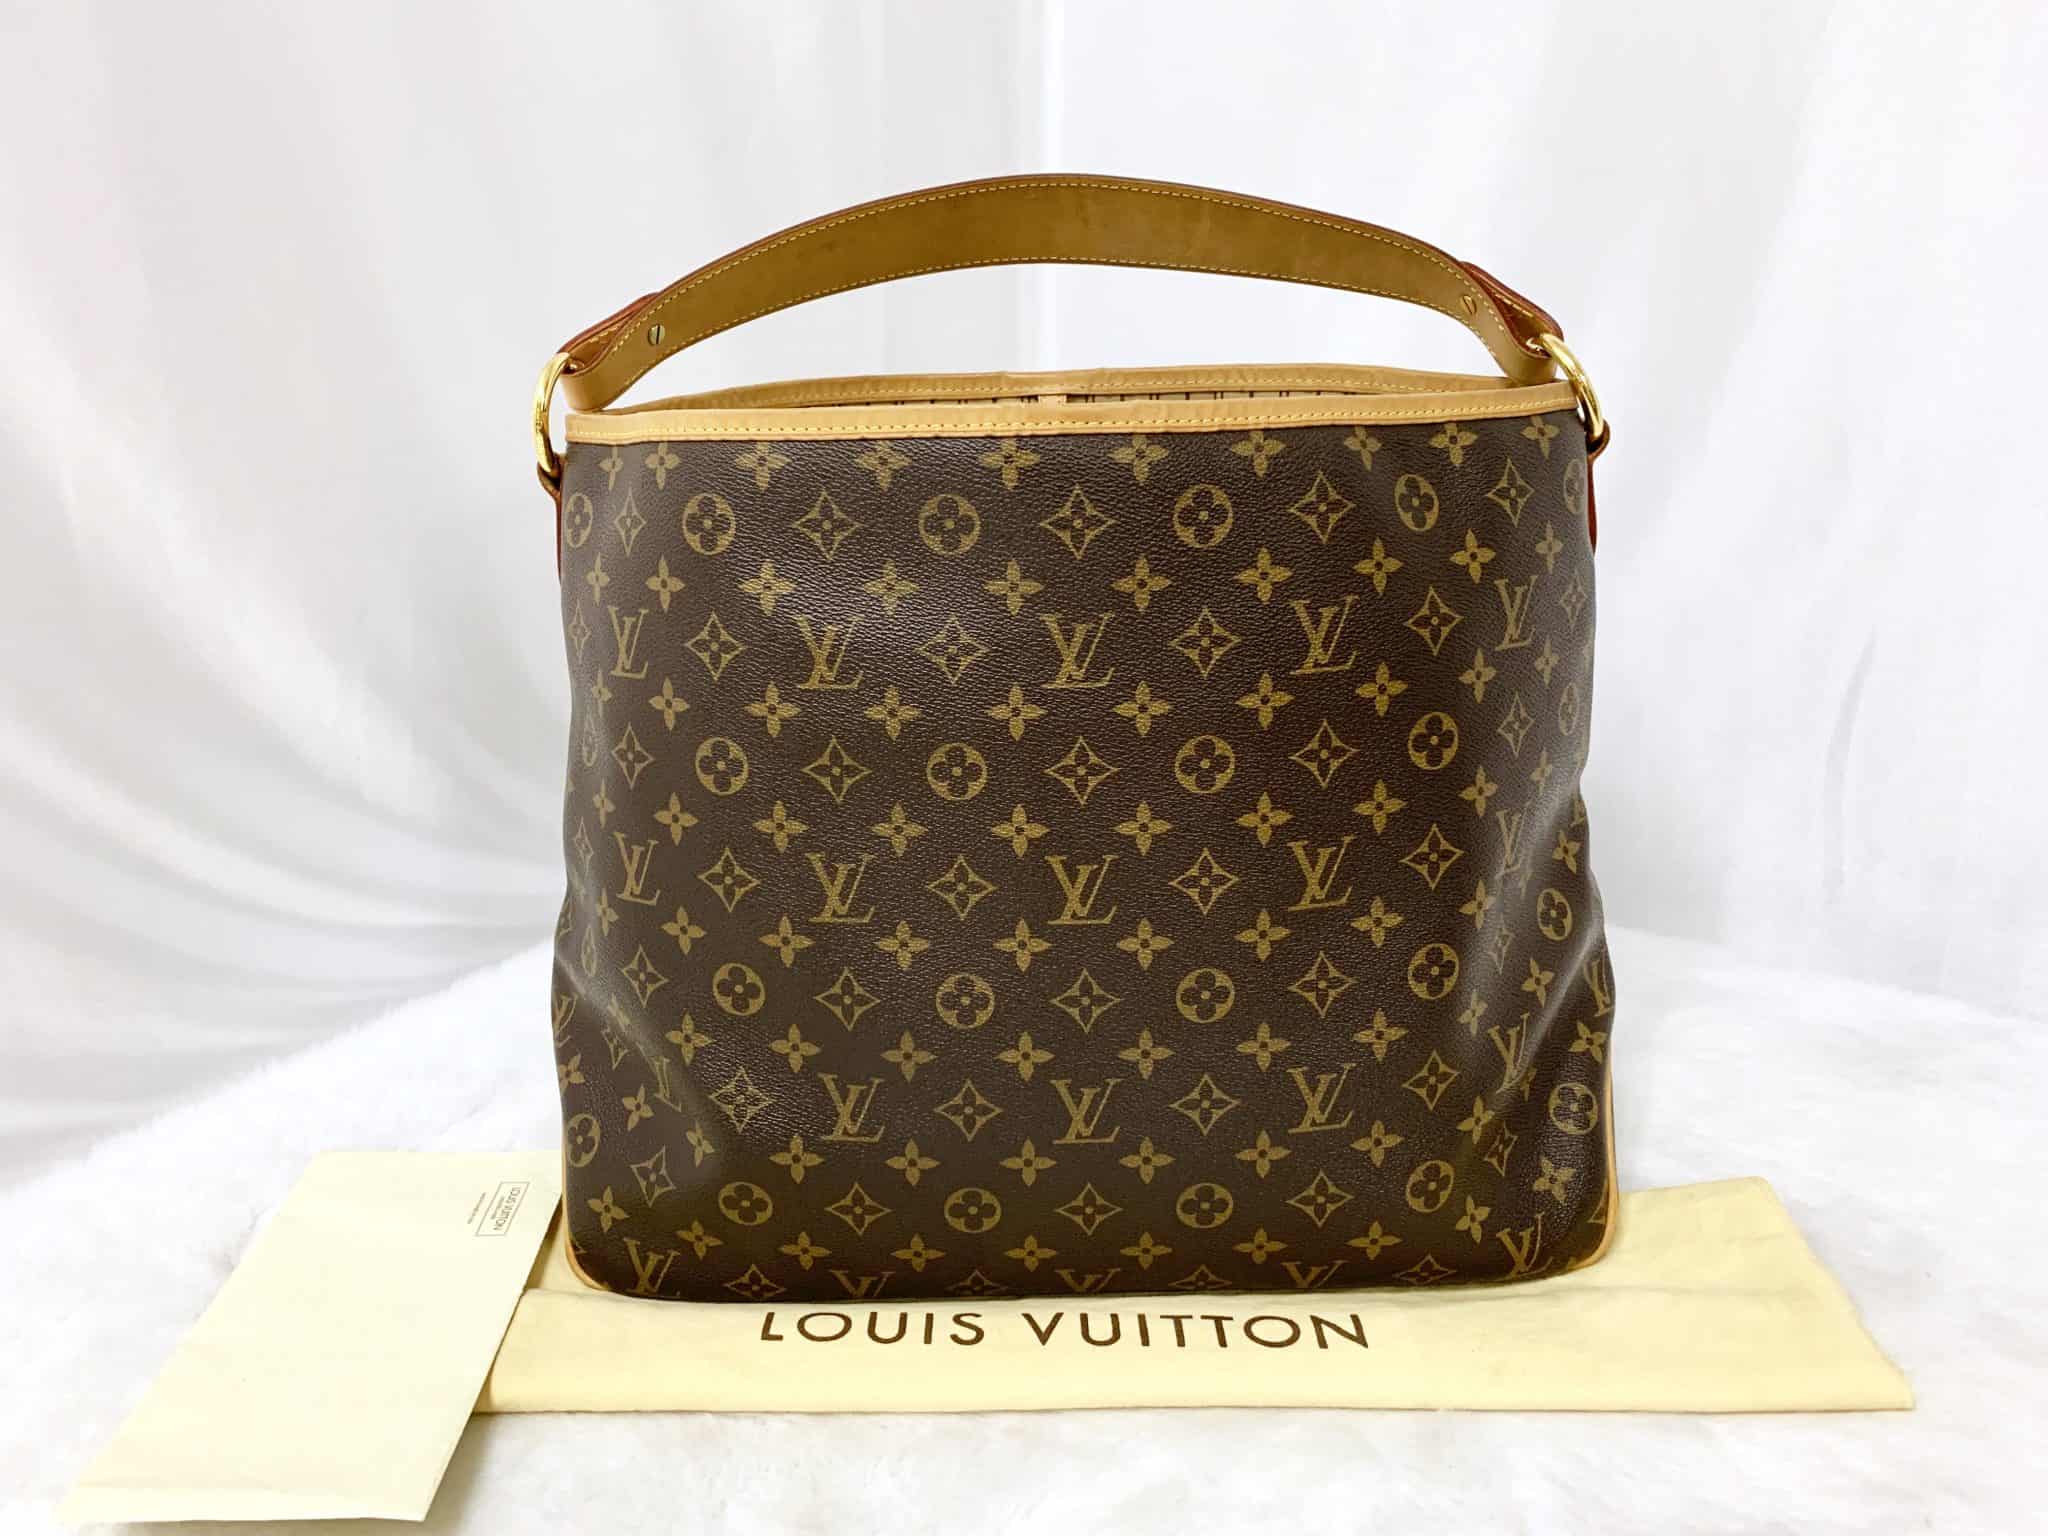 ❌SOLD❌ Authentic Louis Vuitton Delightful MM Monogram Shoulder  Bag(FL4180)+Dust Bag✓ - Reetzy